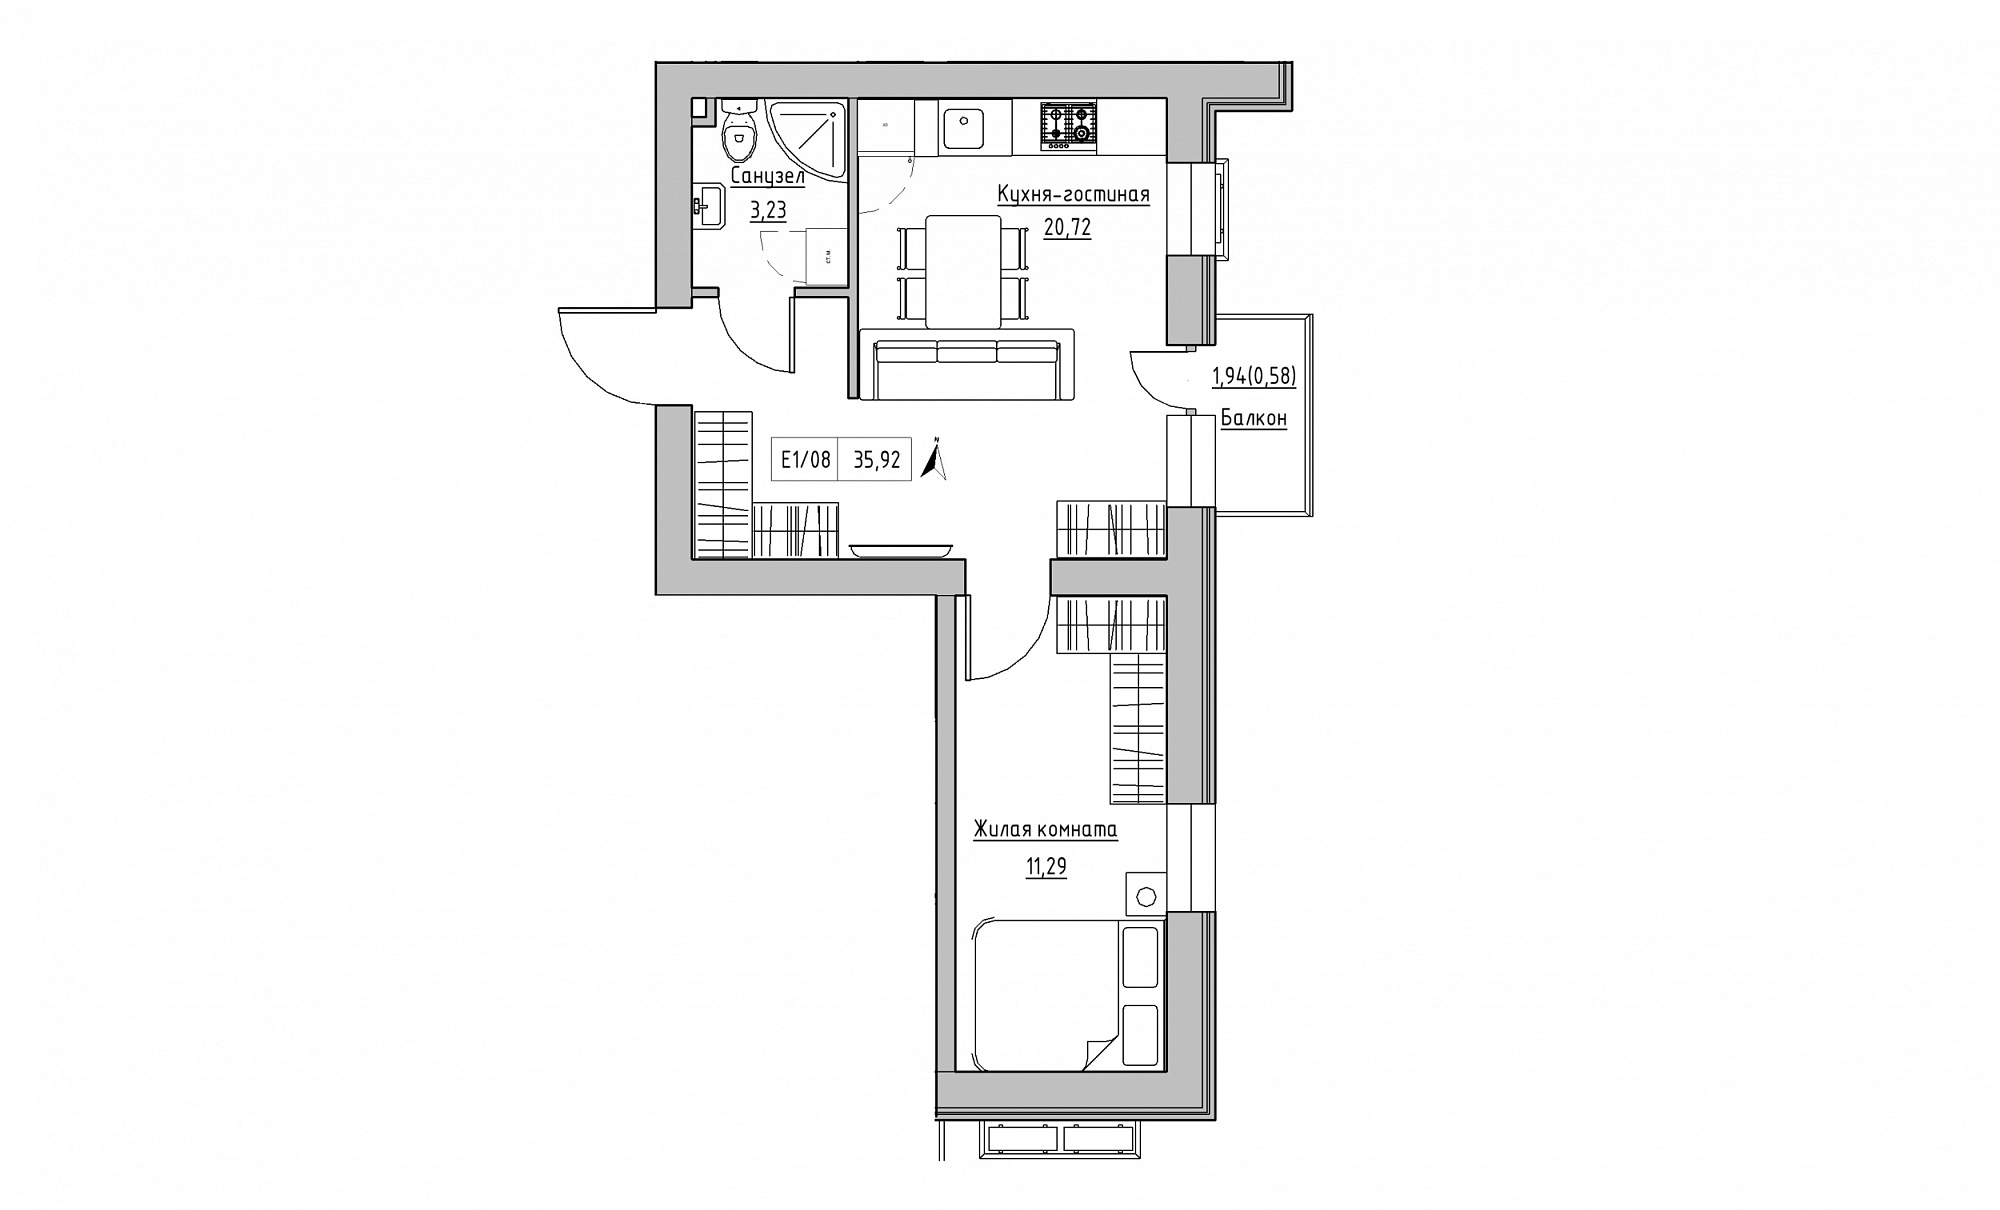 Планировка 1-к квартира площей 35.92м2, KS-015-02/0007.